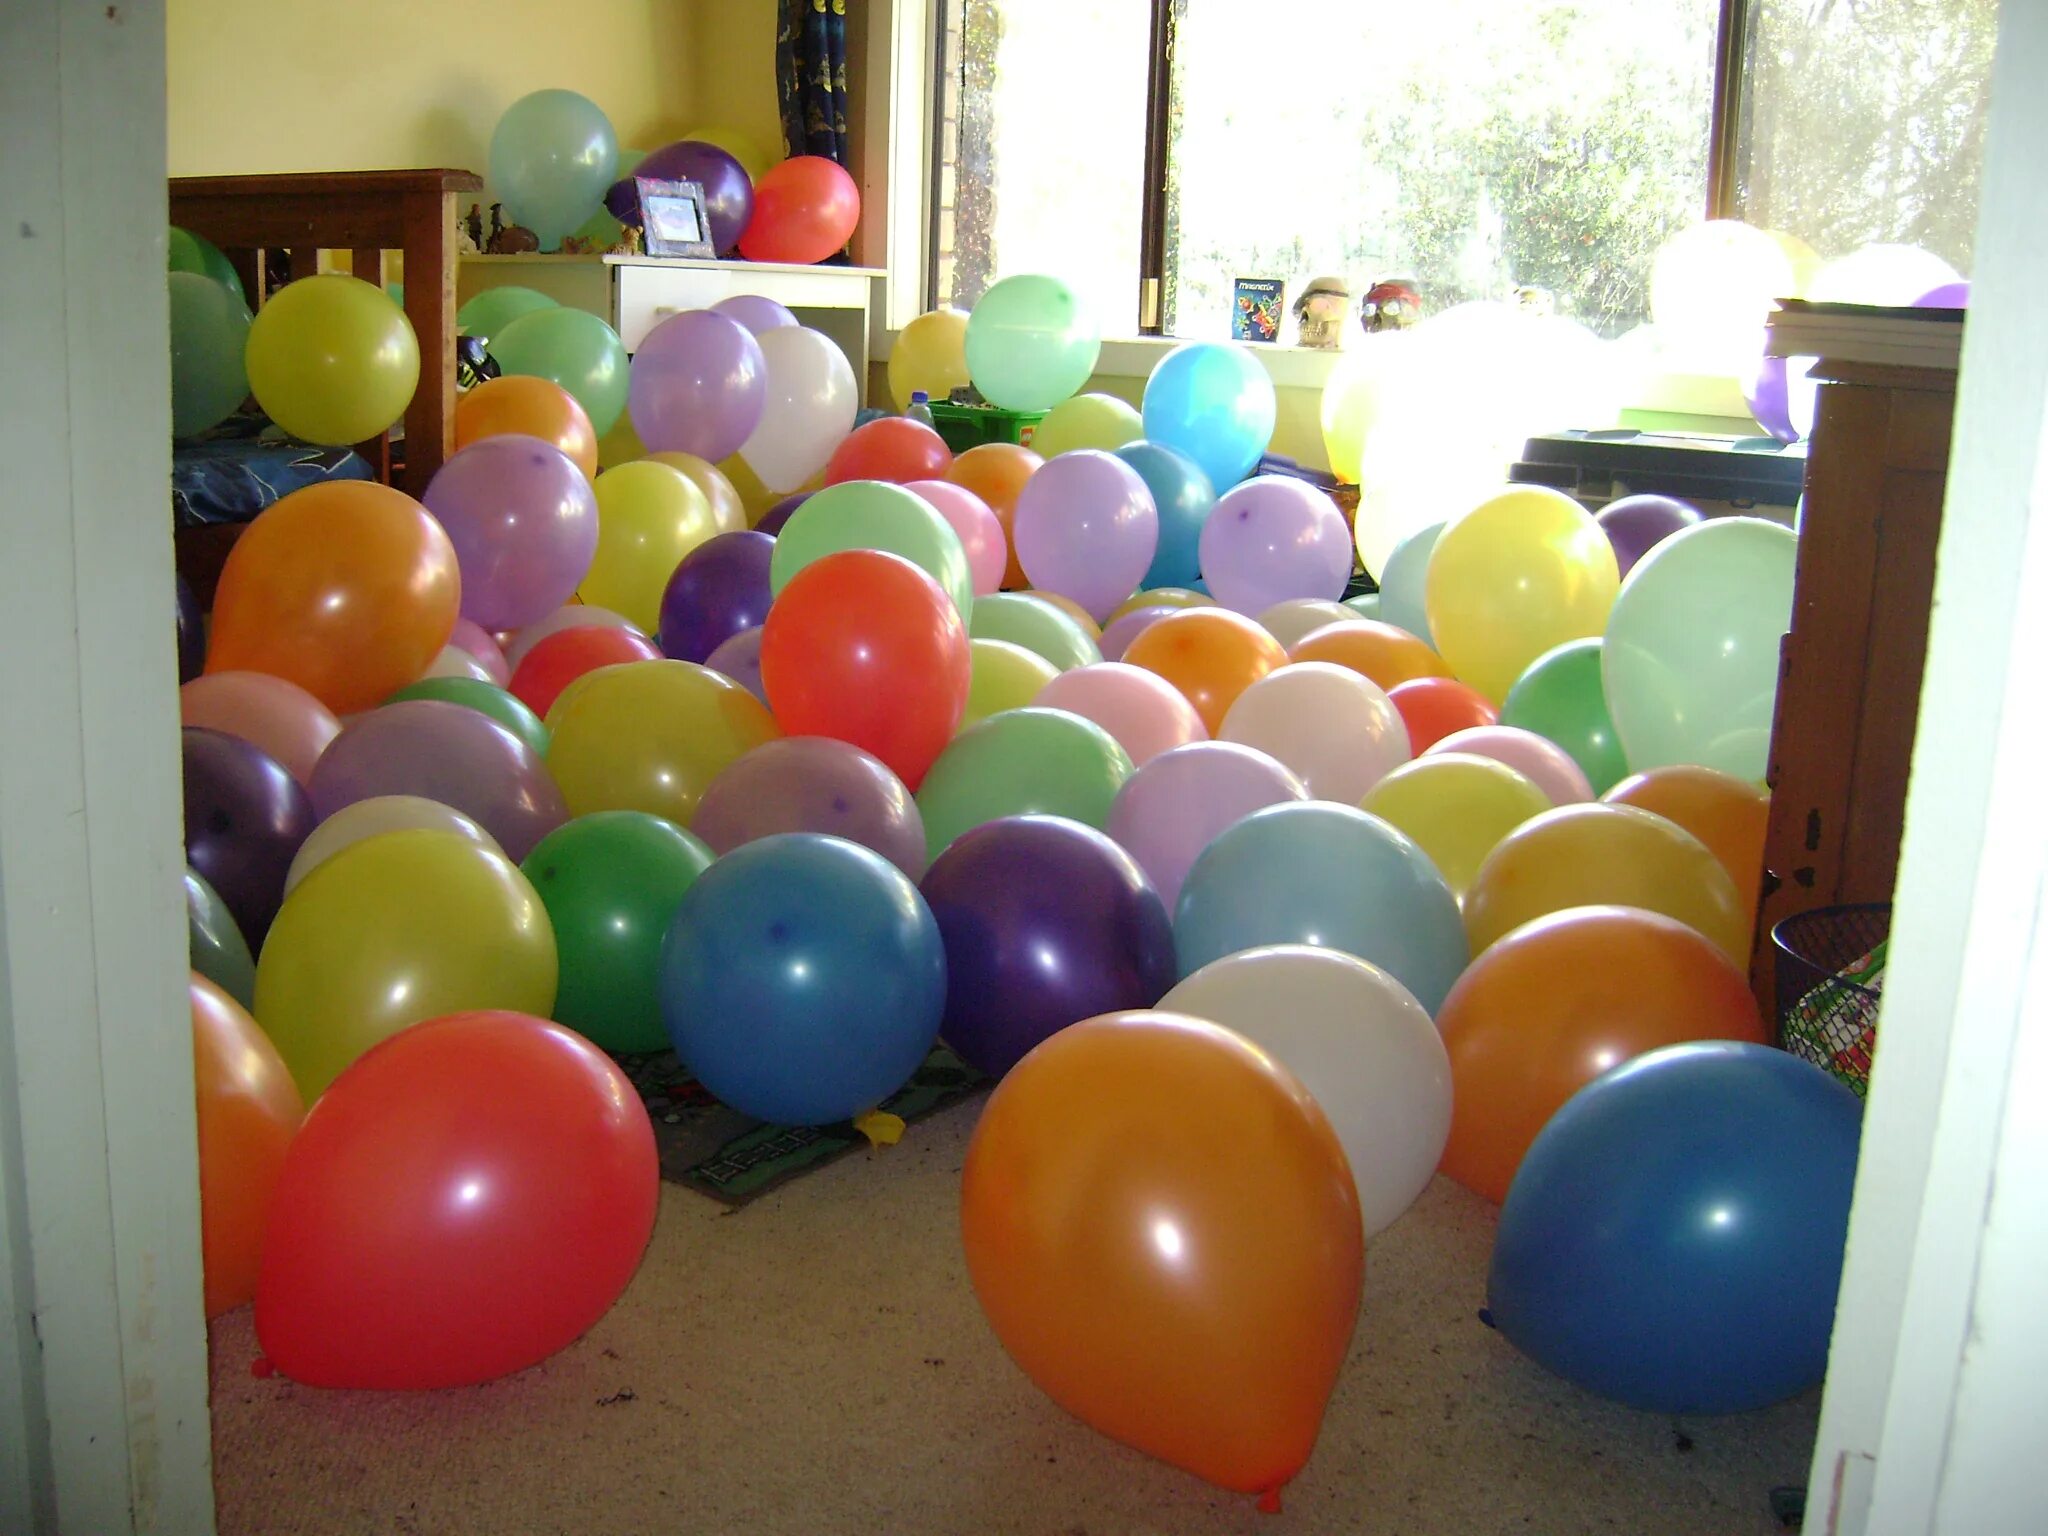 Сто шаров. Шары надувные. Воздушные шары на полу. Комната в шарах. Украшение обычными шарами.